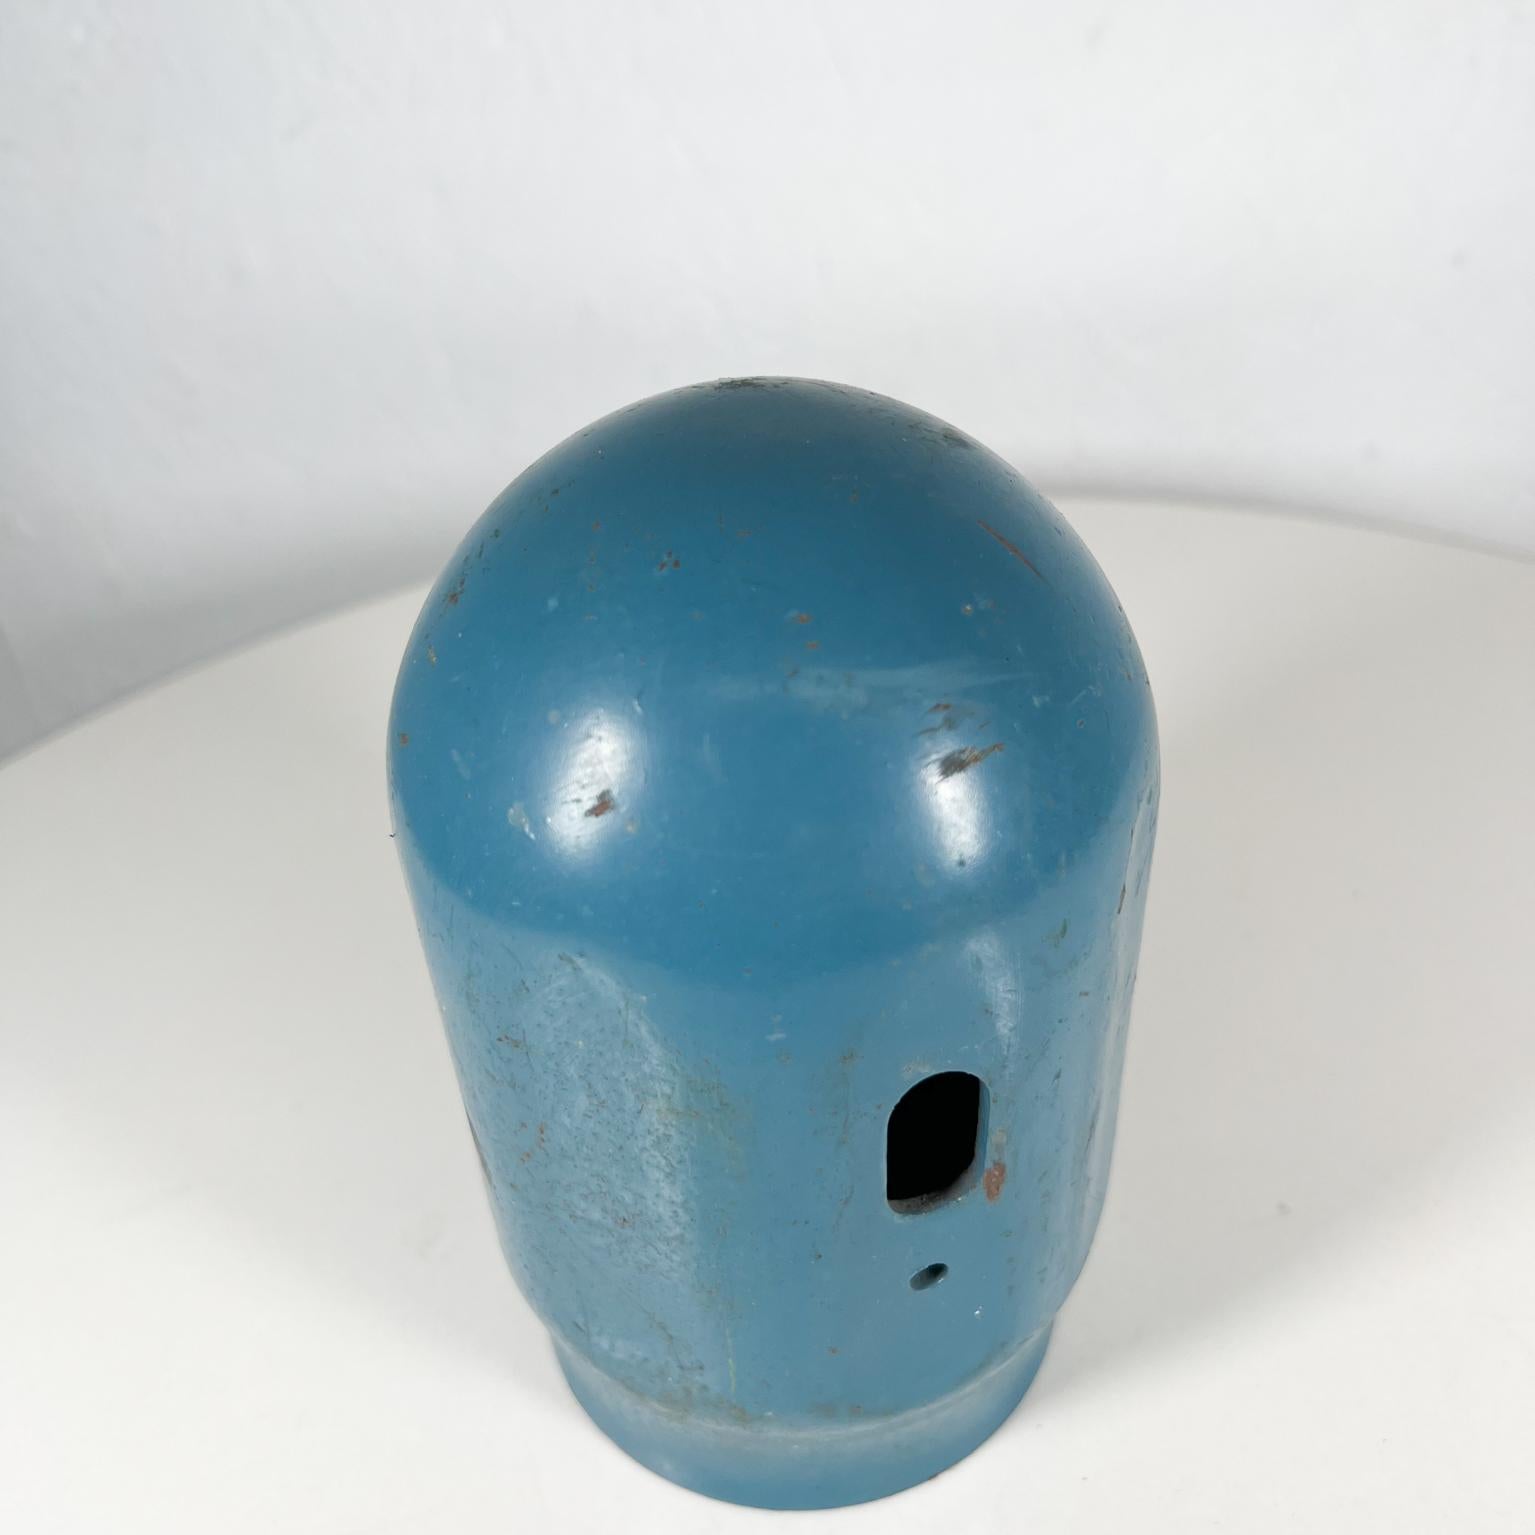 Metal Old Vintage Blue Threaded Gas Cylinder Cap